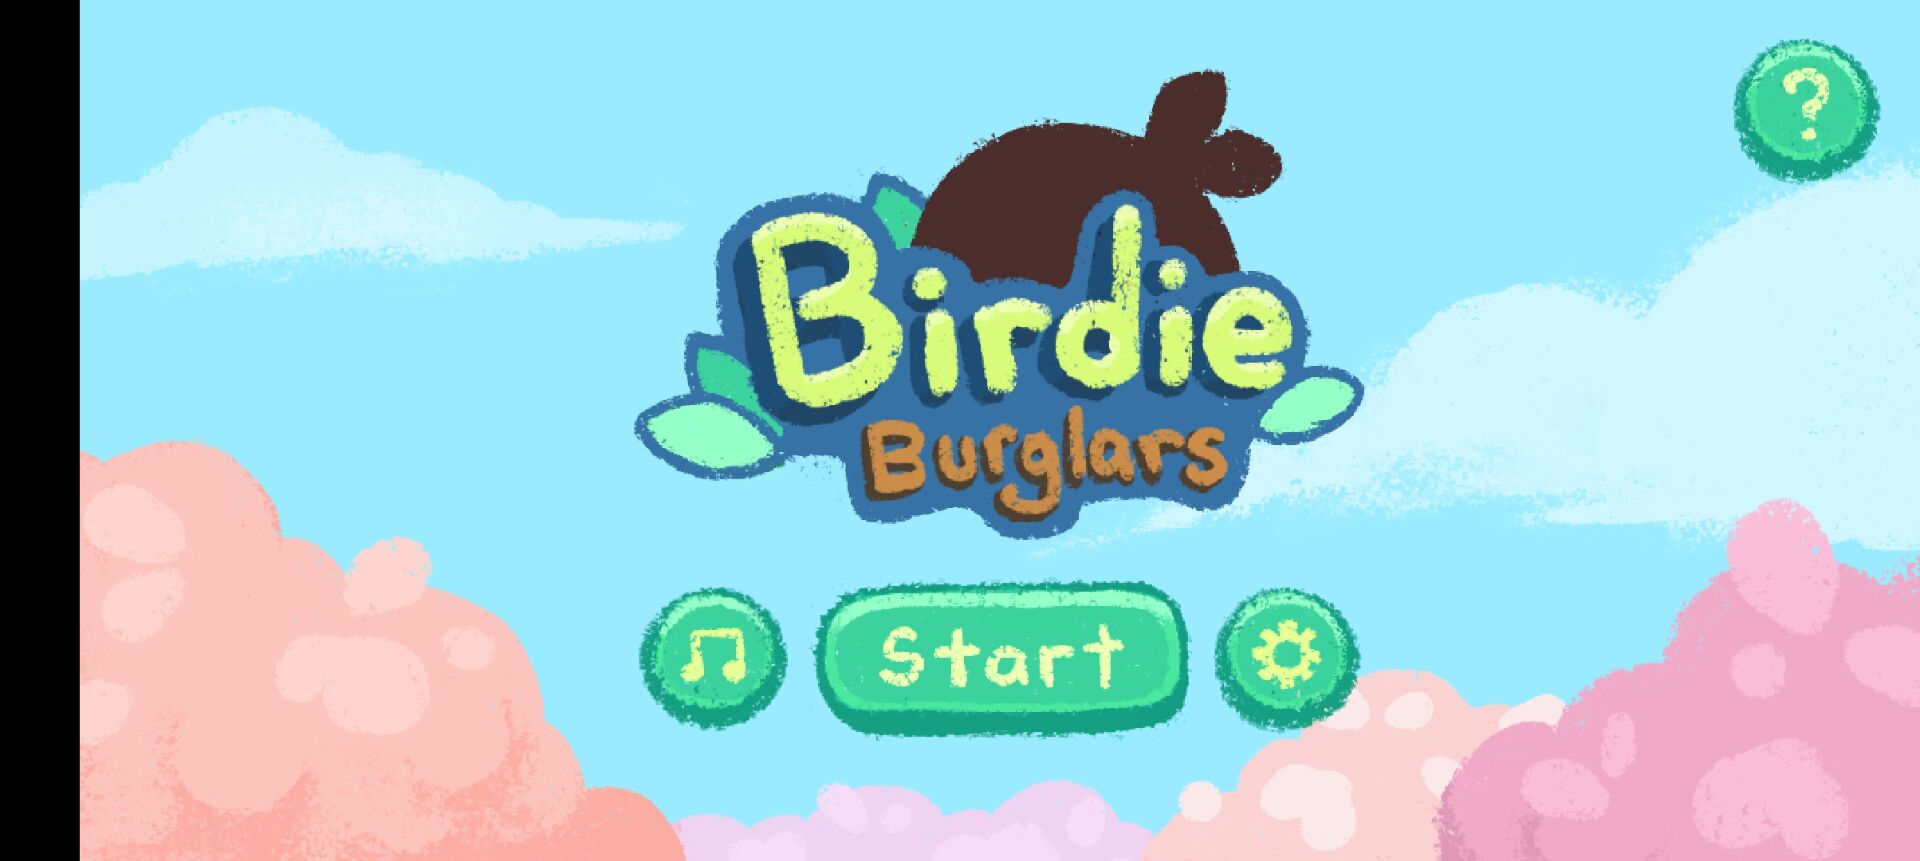 Birdie Burglars